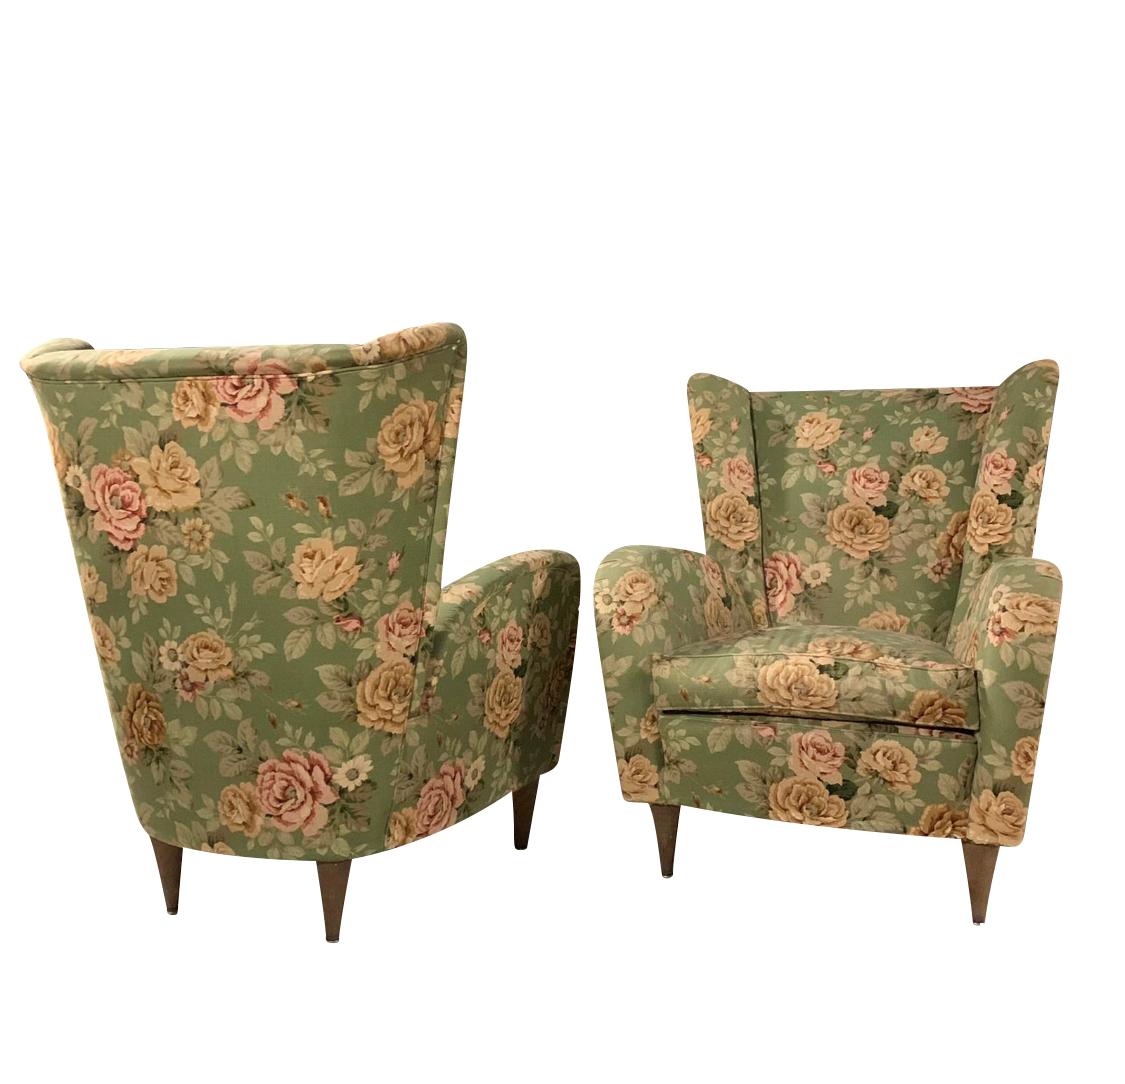 Paire de fauteuils de style Paolo Buffa en tissu floral d'origine des années 50 et pieds effilés en bois.

Les chaises peuvent être retapissées selon les exigences du client.